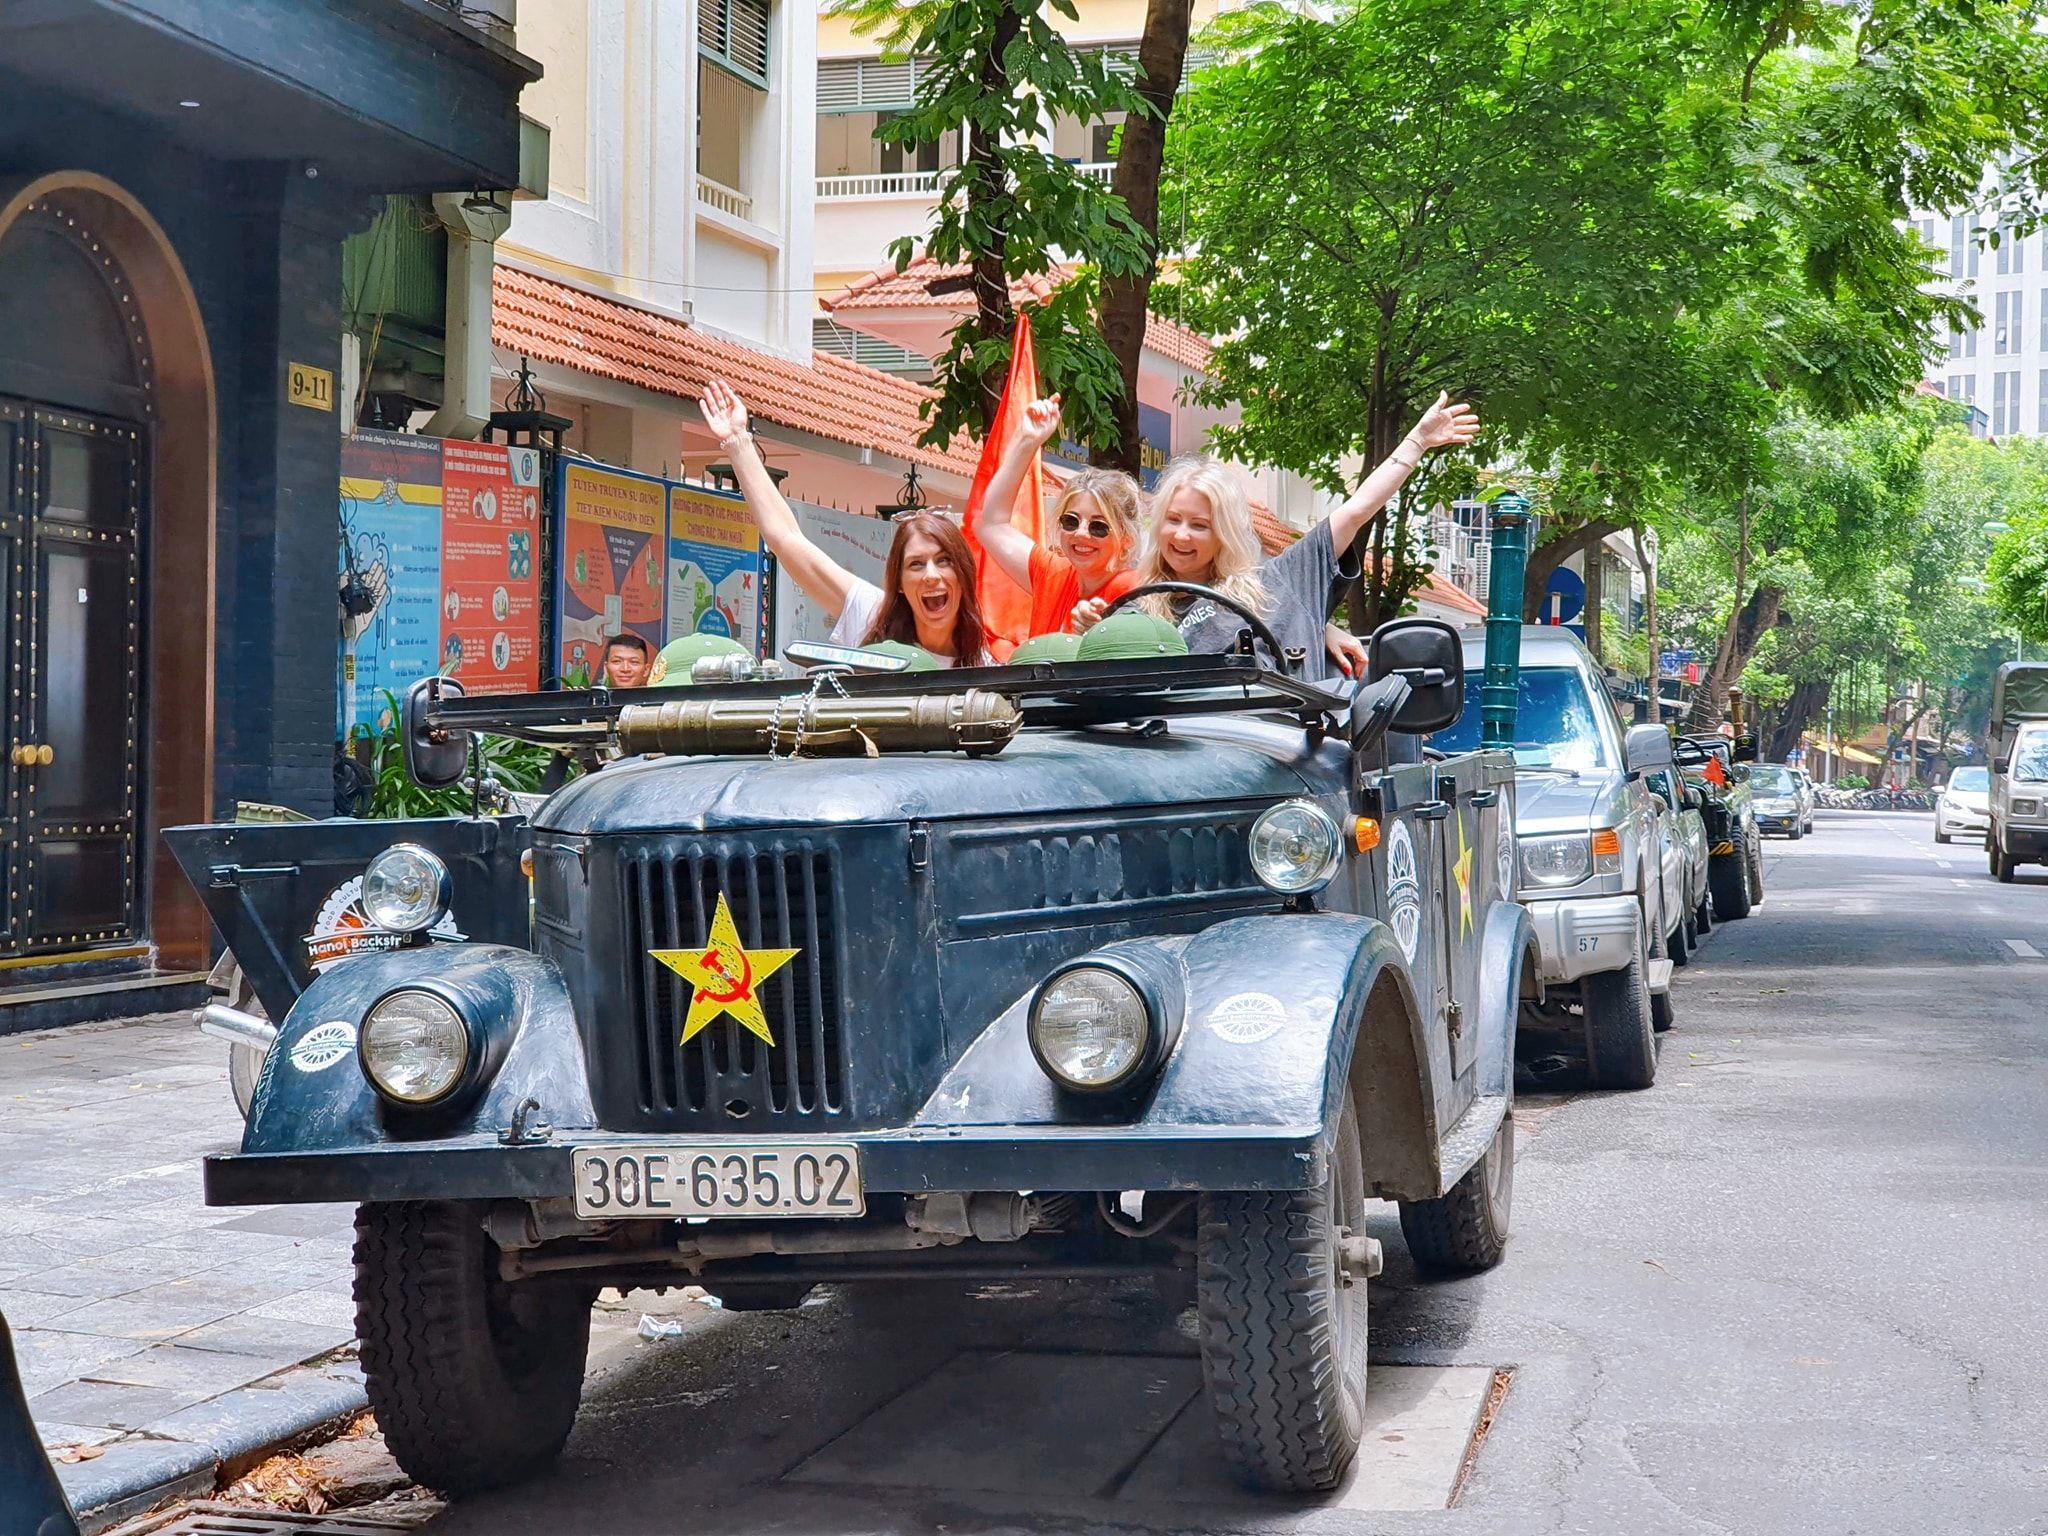 Ra đôi mắt showroom xe pháo Jeep chính xác thứ nhất bên trên nước ta  Ôtô  Việt Giải  Trí